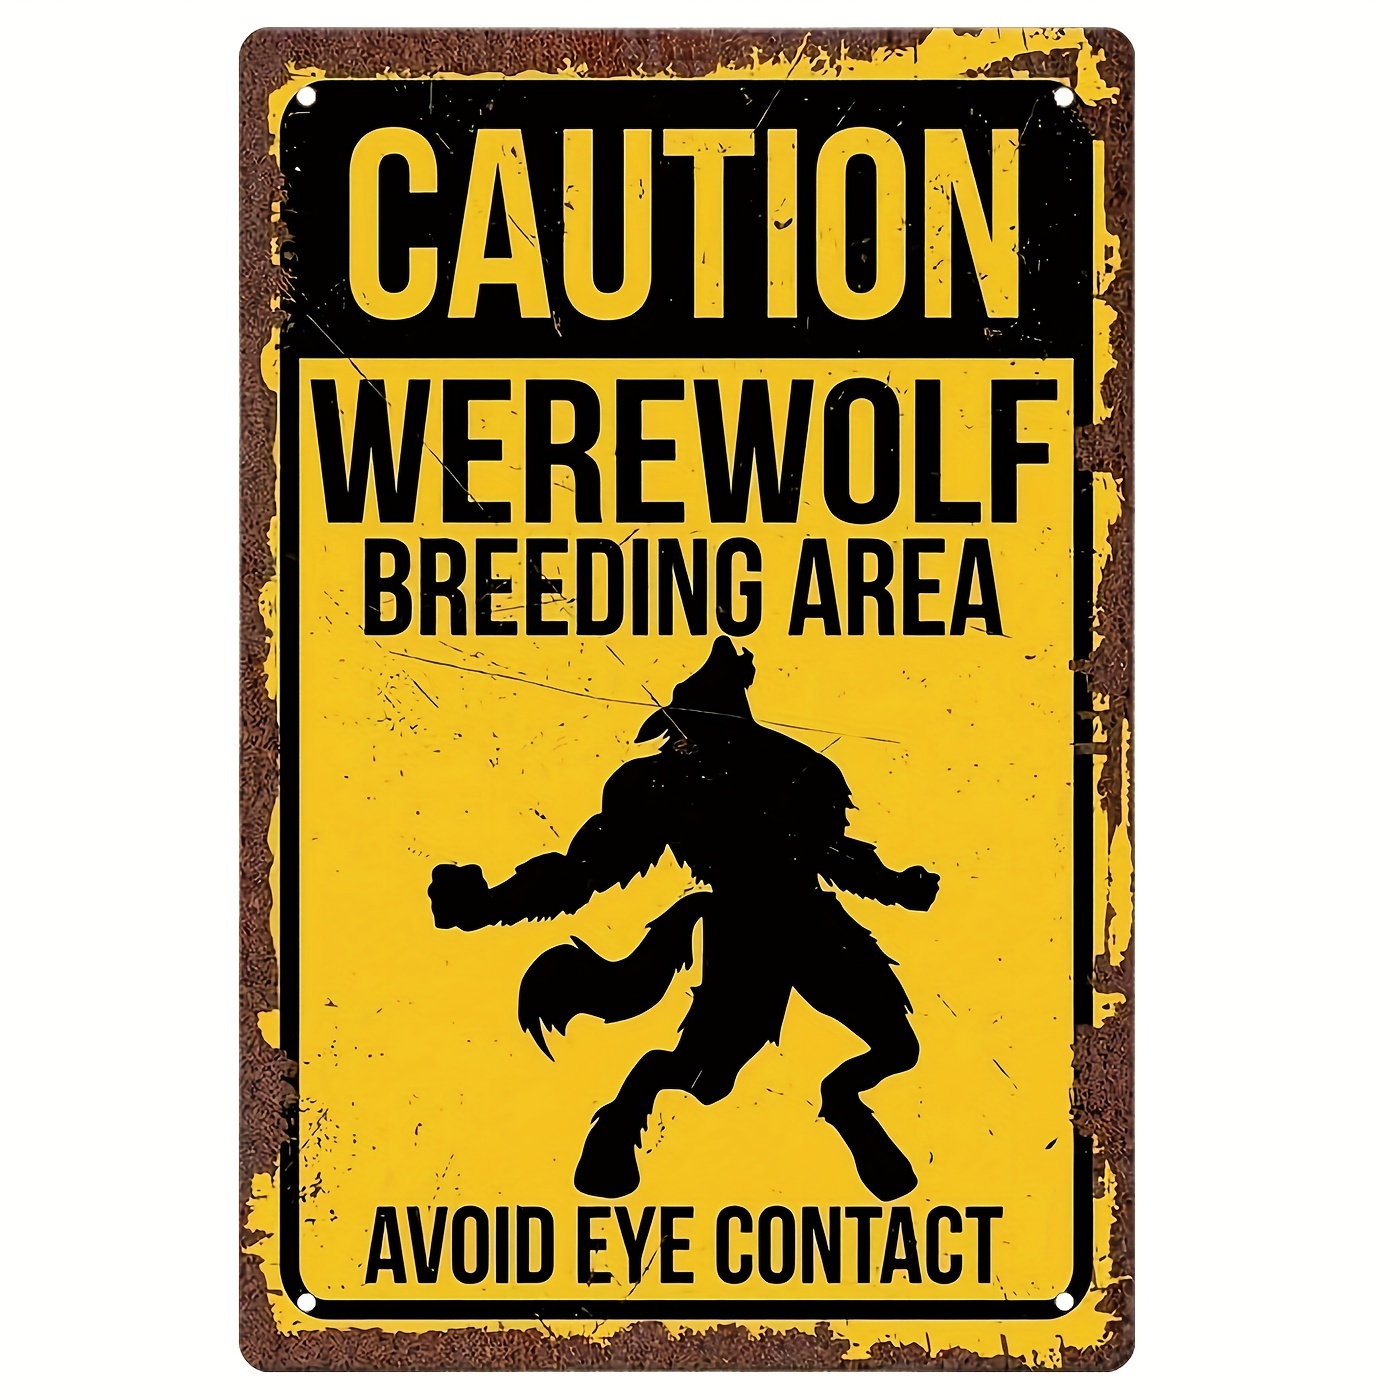 

Werewolf Sign, Werewolf Breeding Area, Werewolf Gift, Urban Legends, Mythical Creature, Monster, Folklore Outdoor Decor 8 X 12 Inches Tin Sign